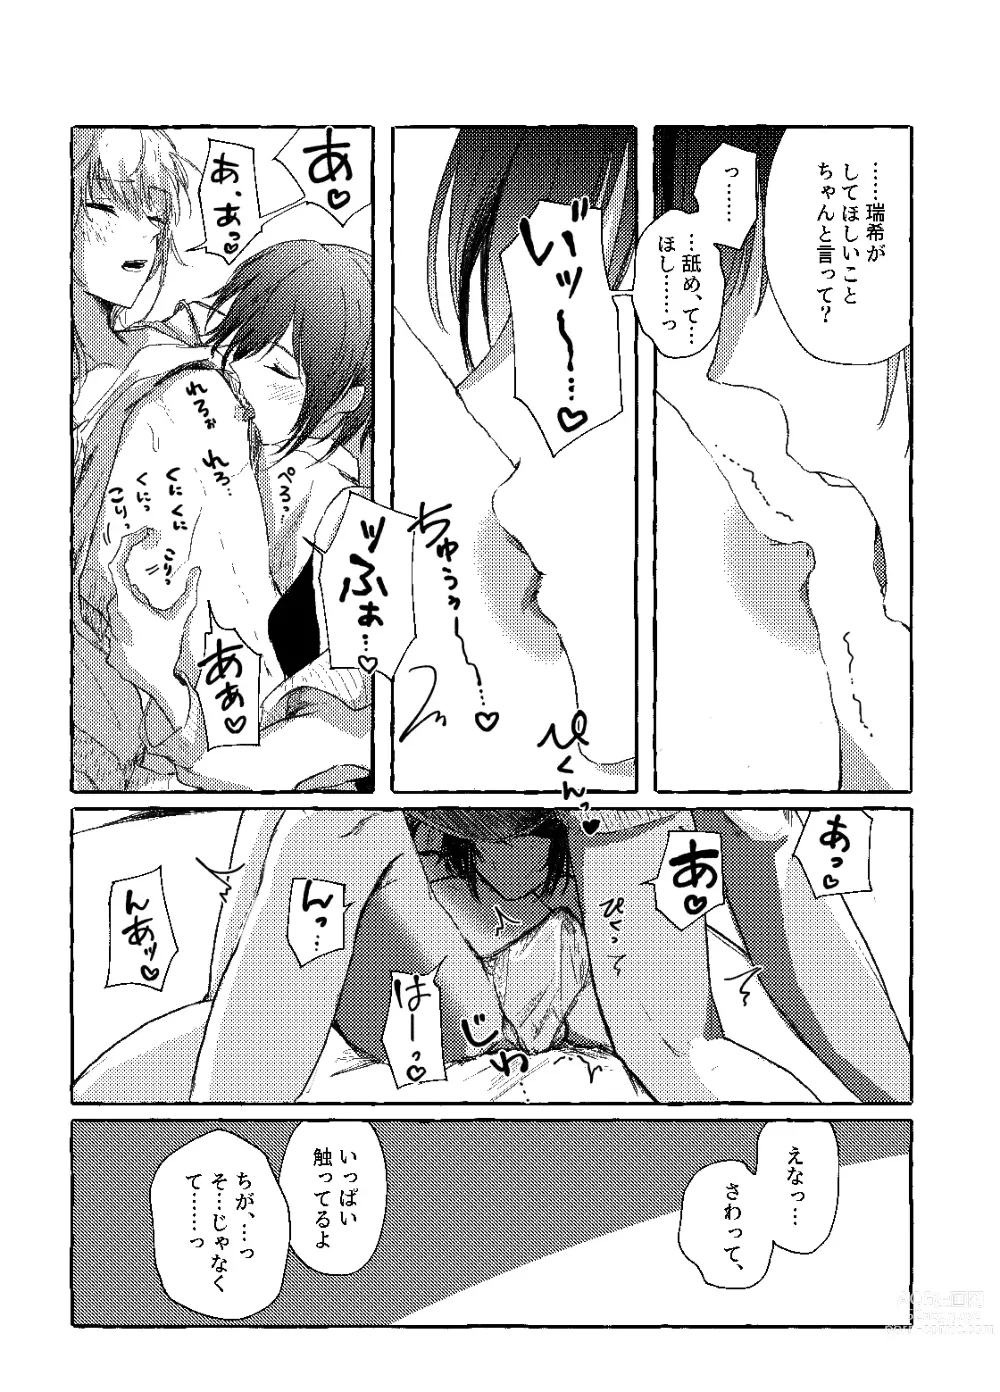 Page 14 of doujinshi Hakoniwa no Naka no Kimi